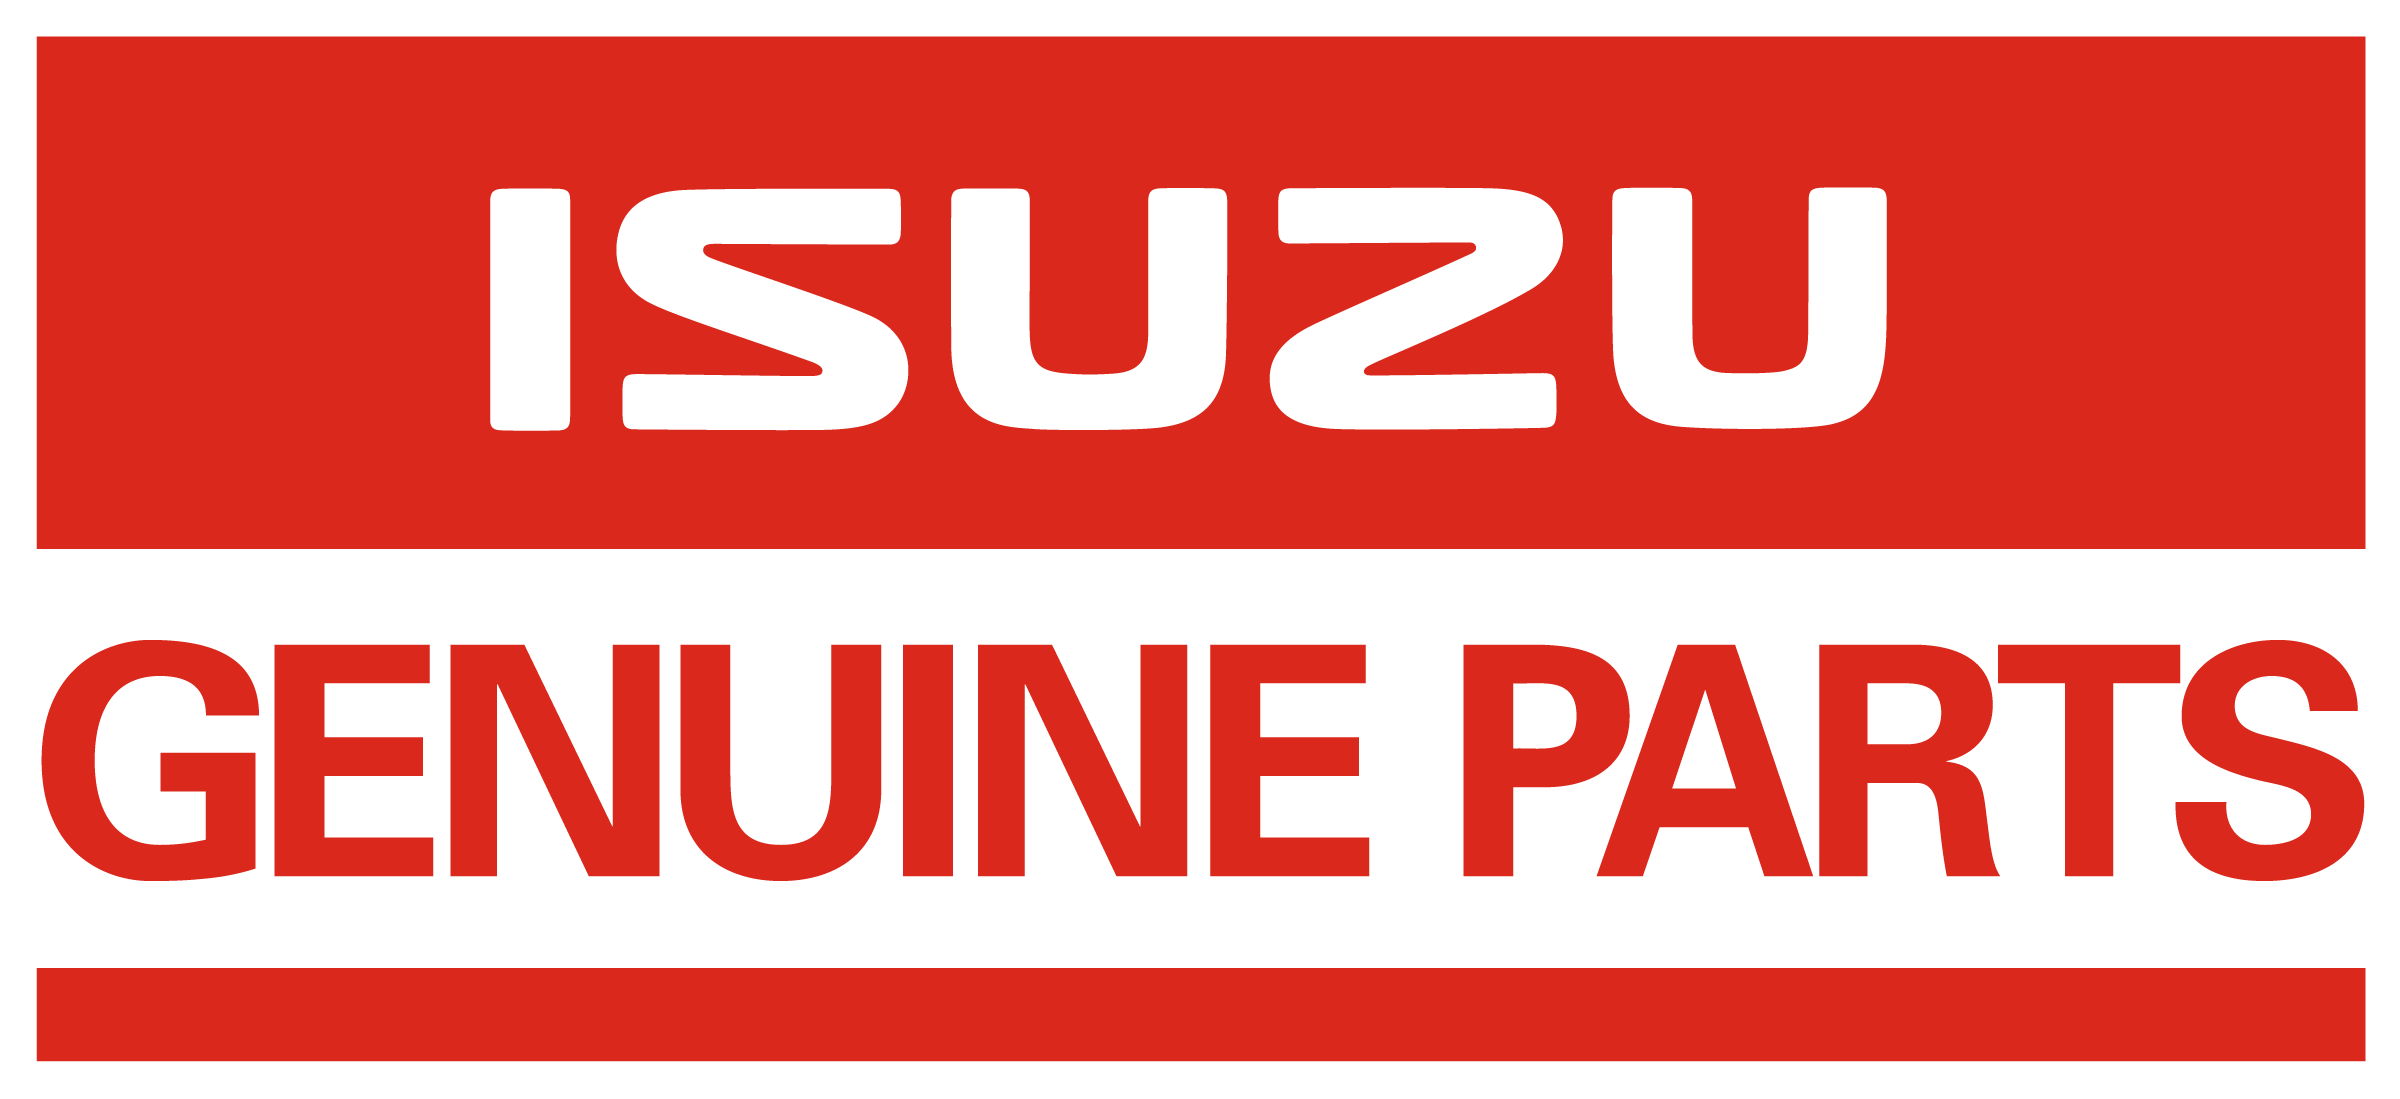 Isuzu Genuine Parts logo